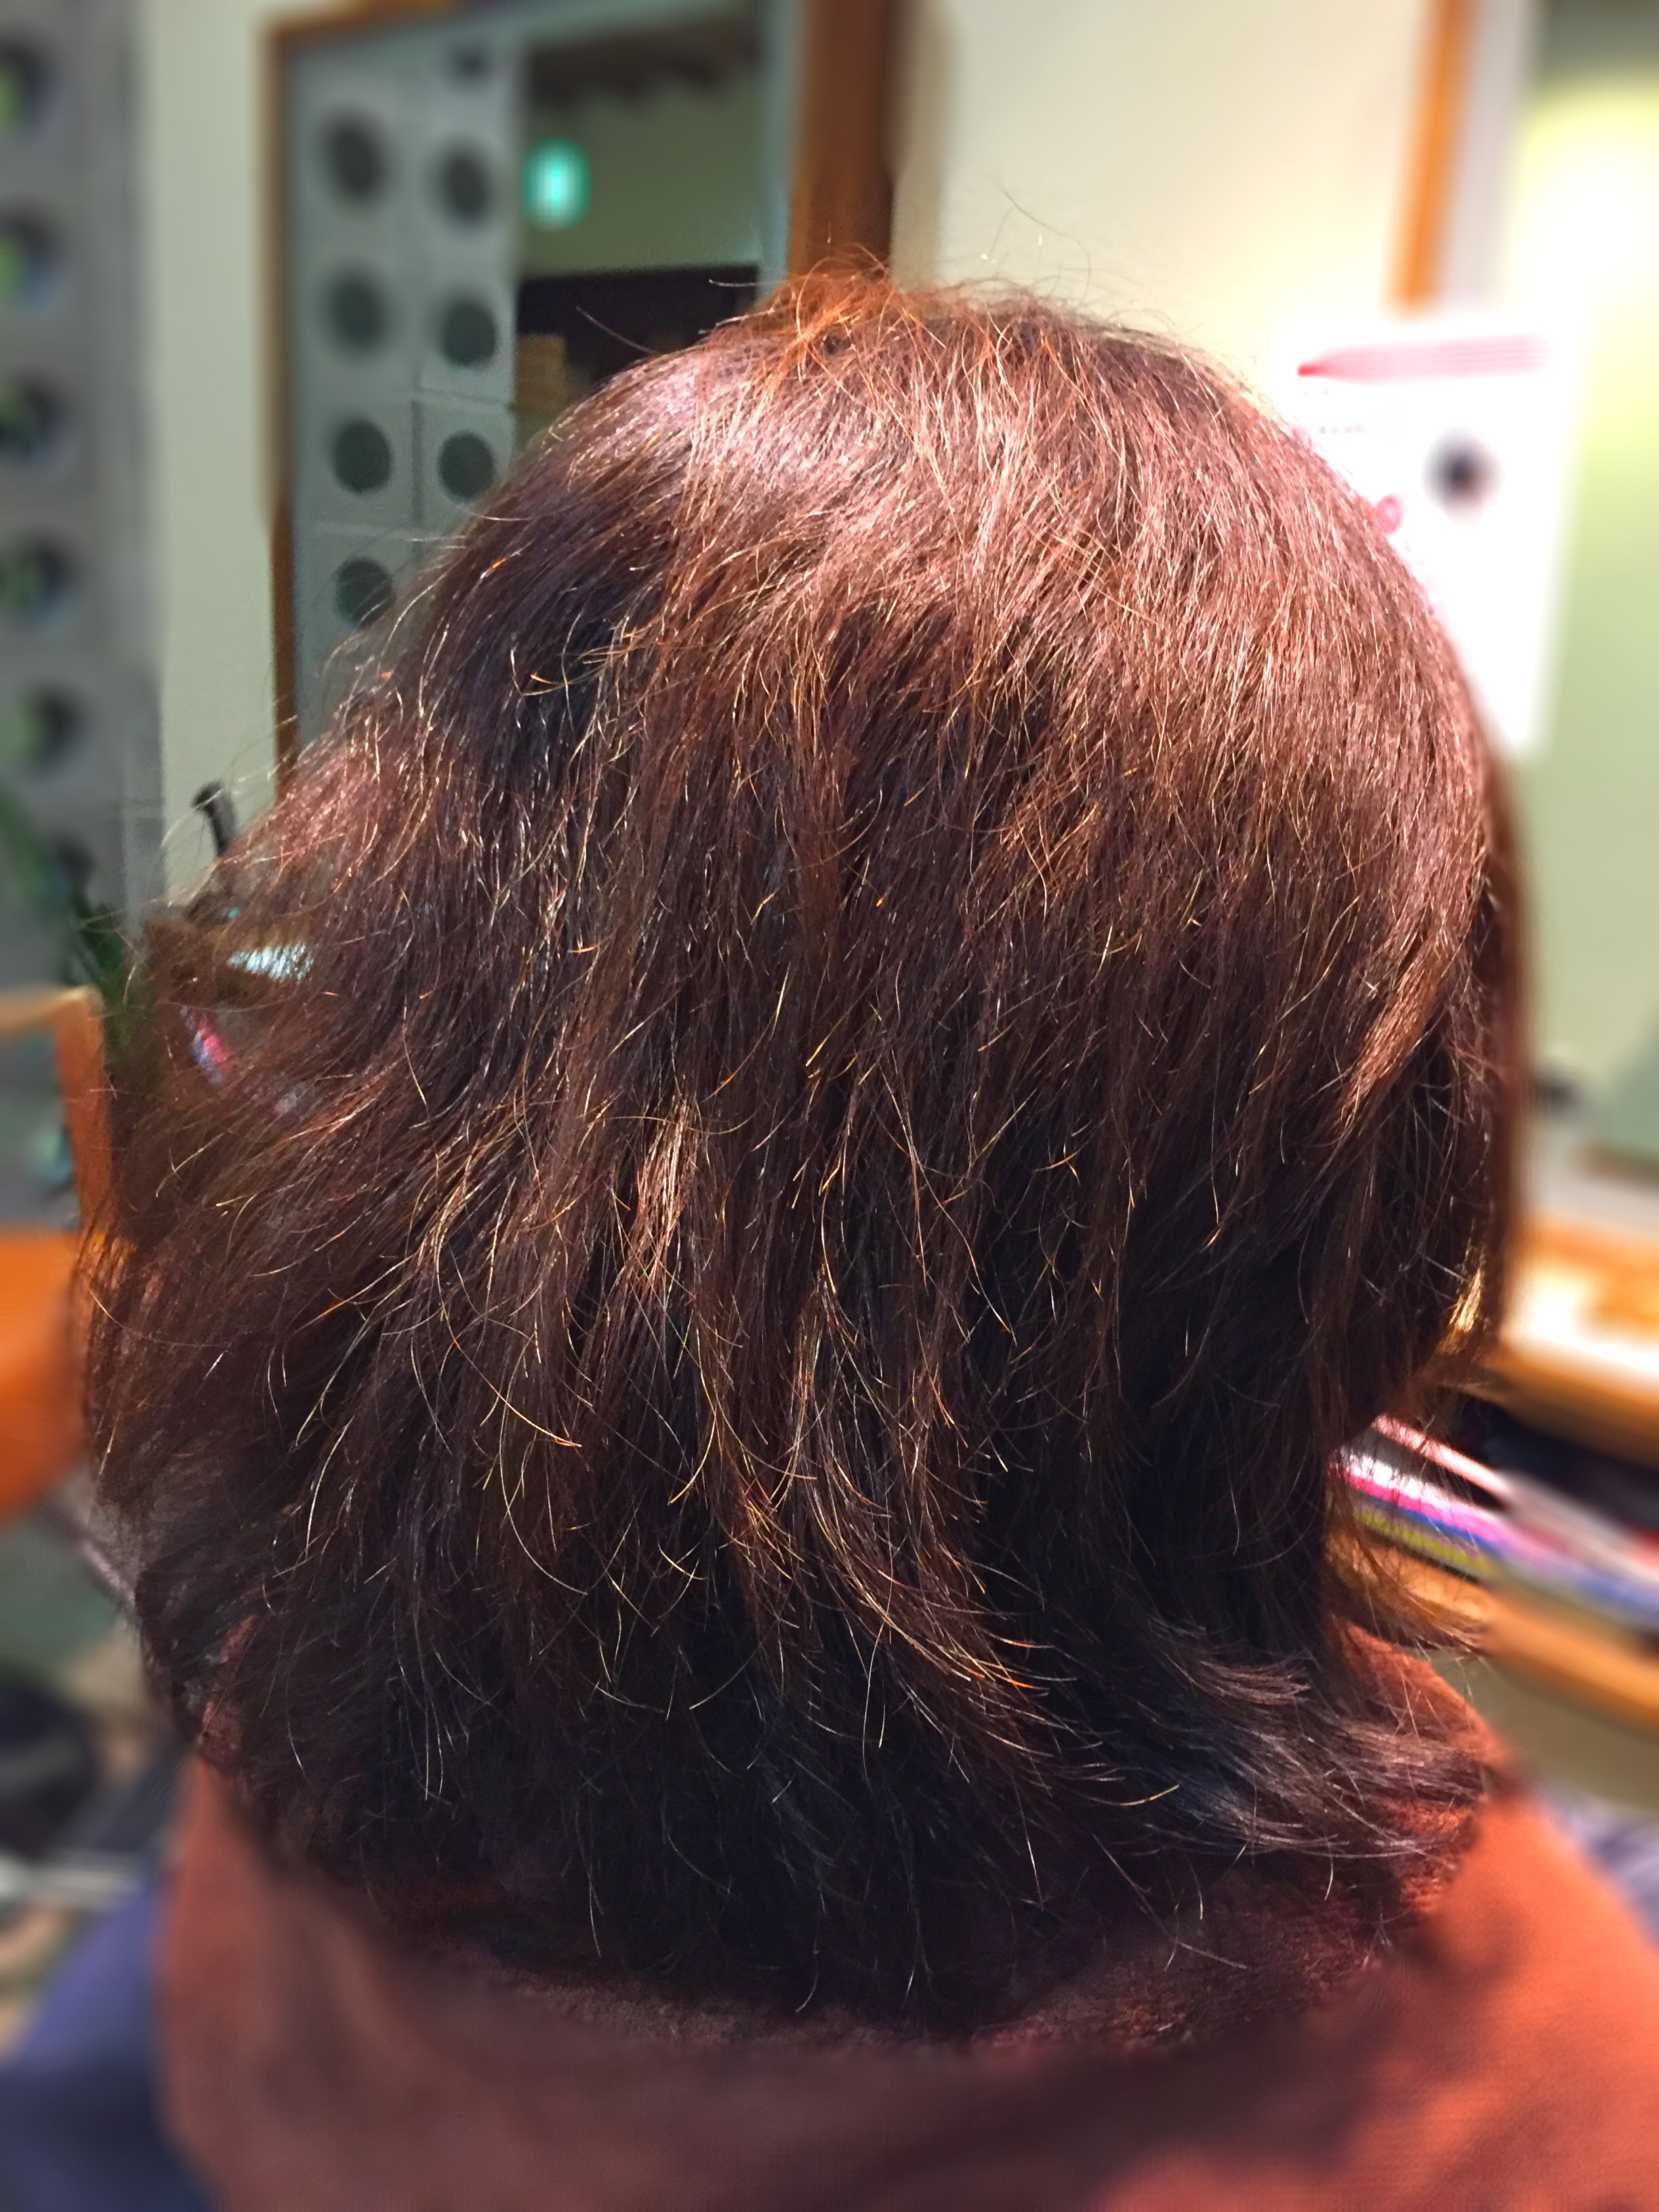 くせ毛を生かす前に覚えておいてほしいこと 神戸三宮の美容室プライベートヘアサロンsur